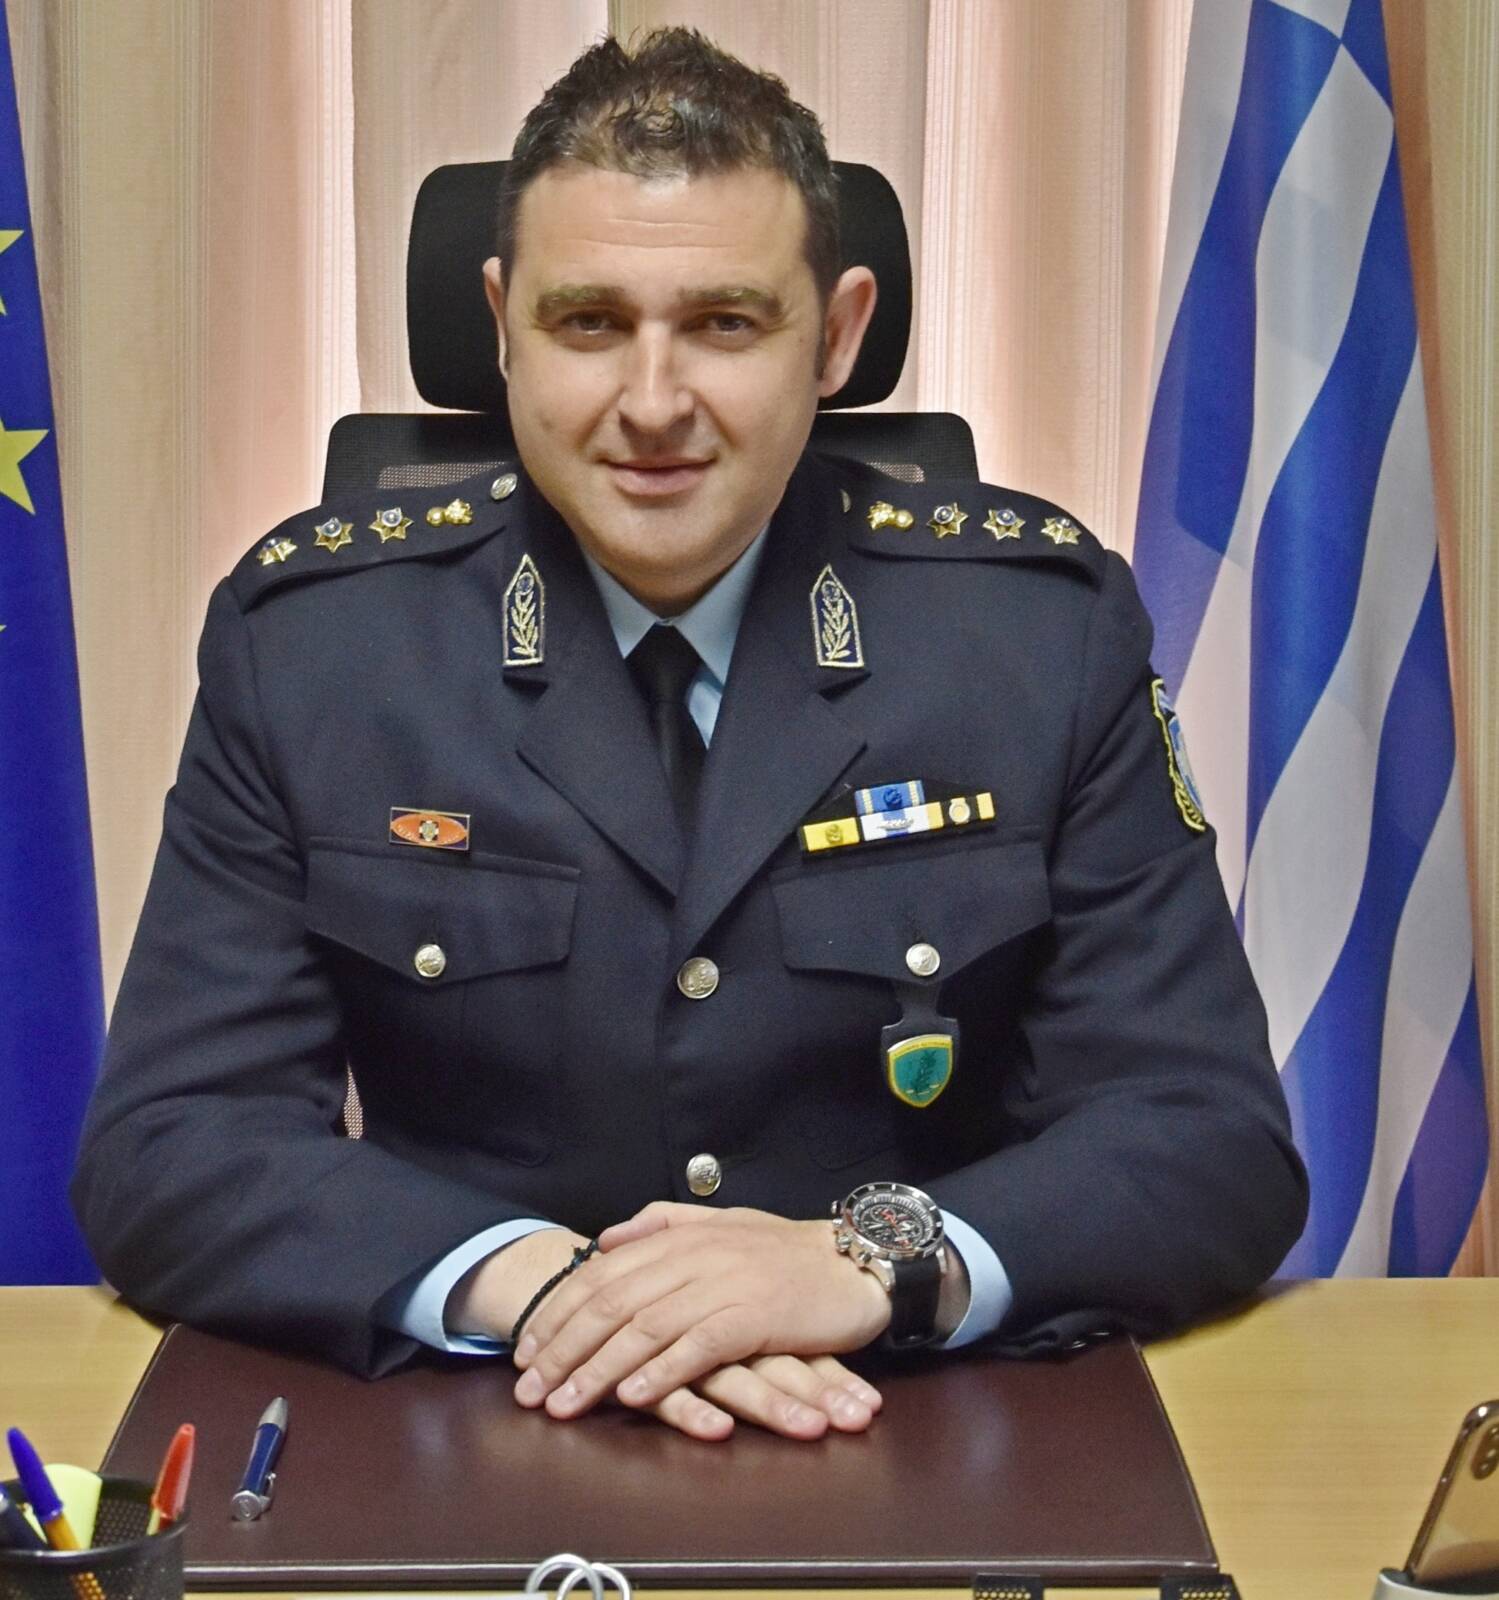 Ανέλαβε και εκτελεί καθήκοντα Διευθυντή της Διεύθυνσης Αστυνομίας Καστοριάς, ο Αστυνομικός Διευθυντής Νικόλαος Έξαρχος του Χρήστου